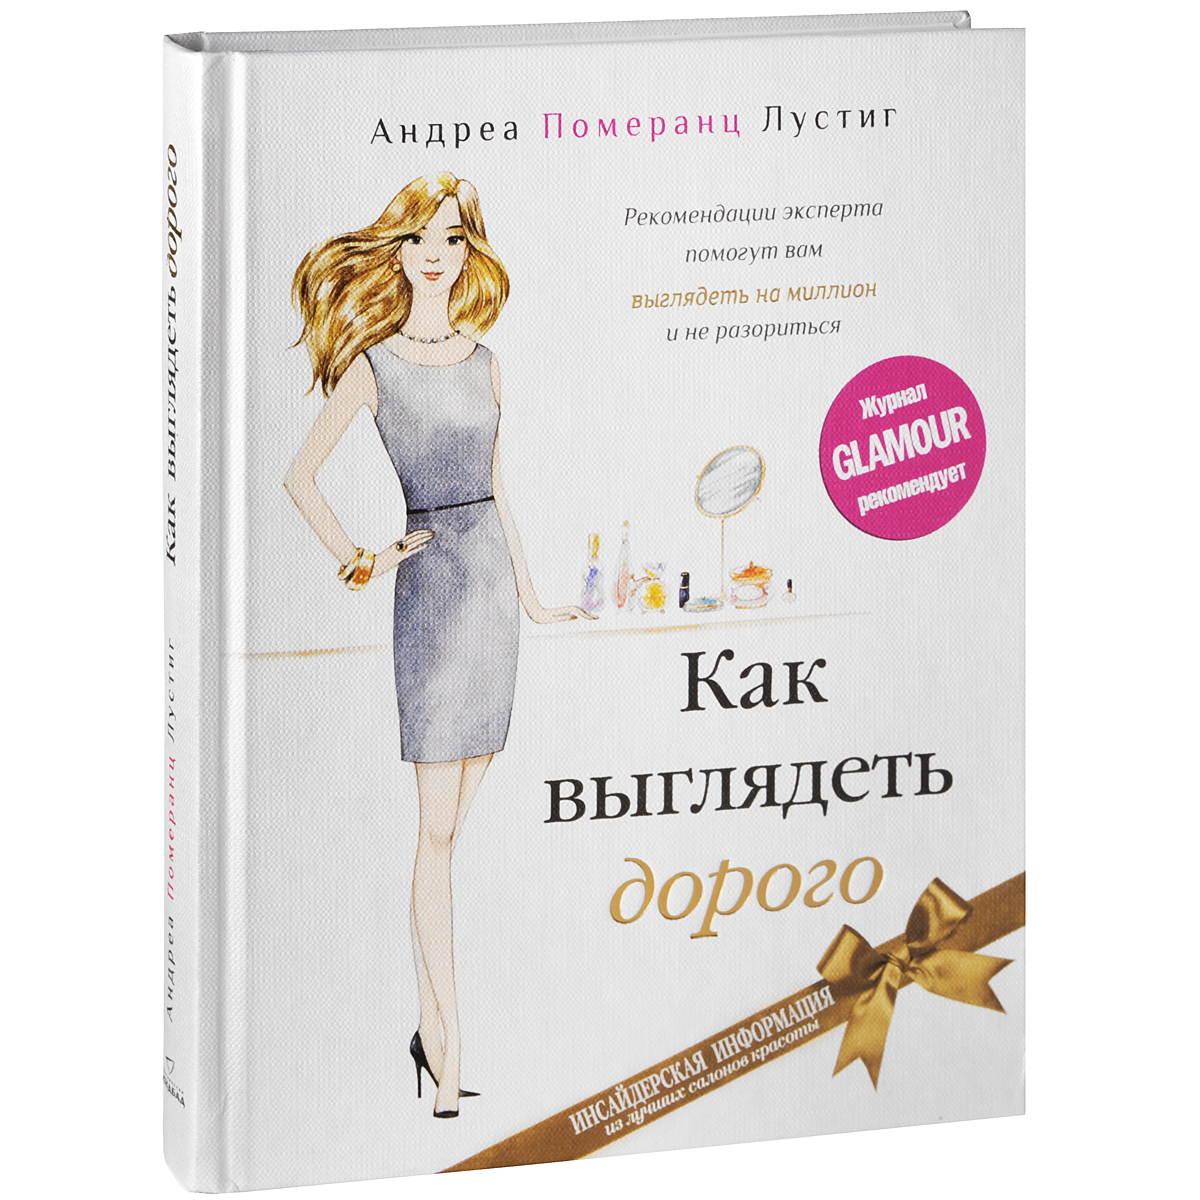 Книга "Как выглядеть дорого" Андреа Померанц Лустинг - купить книгу How to Look Expensive ISBN 978-5-905891-14-4 с доставкой по почте в интернет-магазине OZON.ru